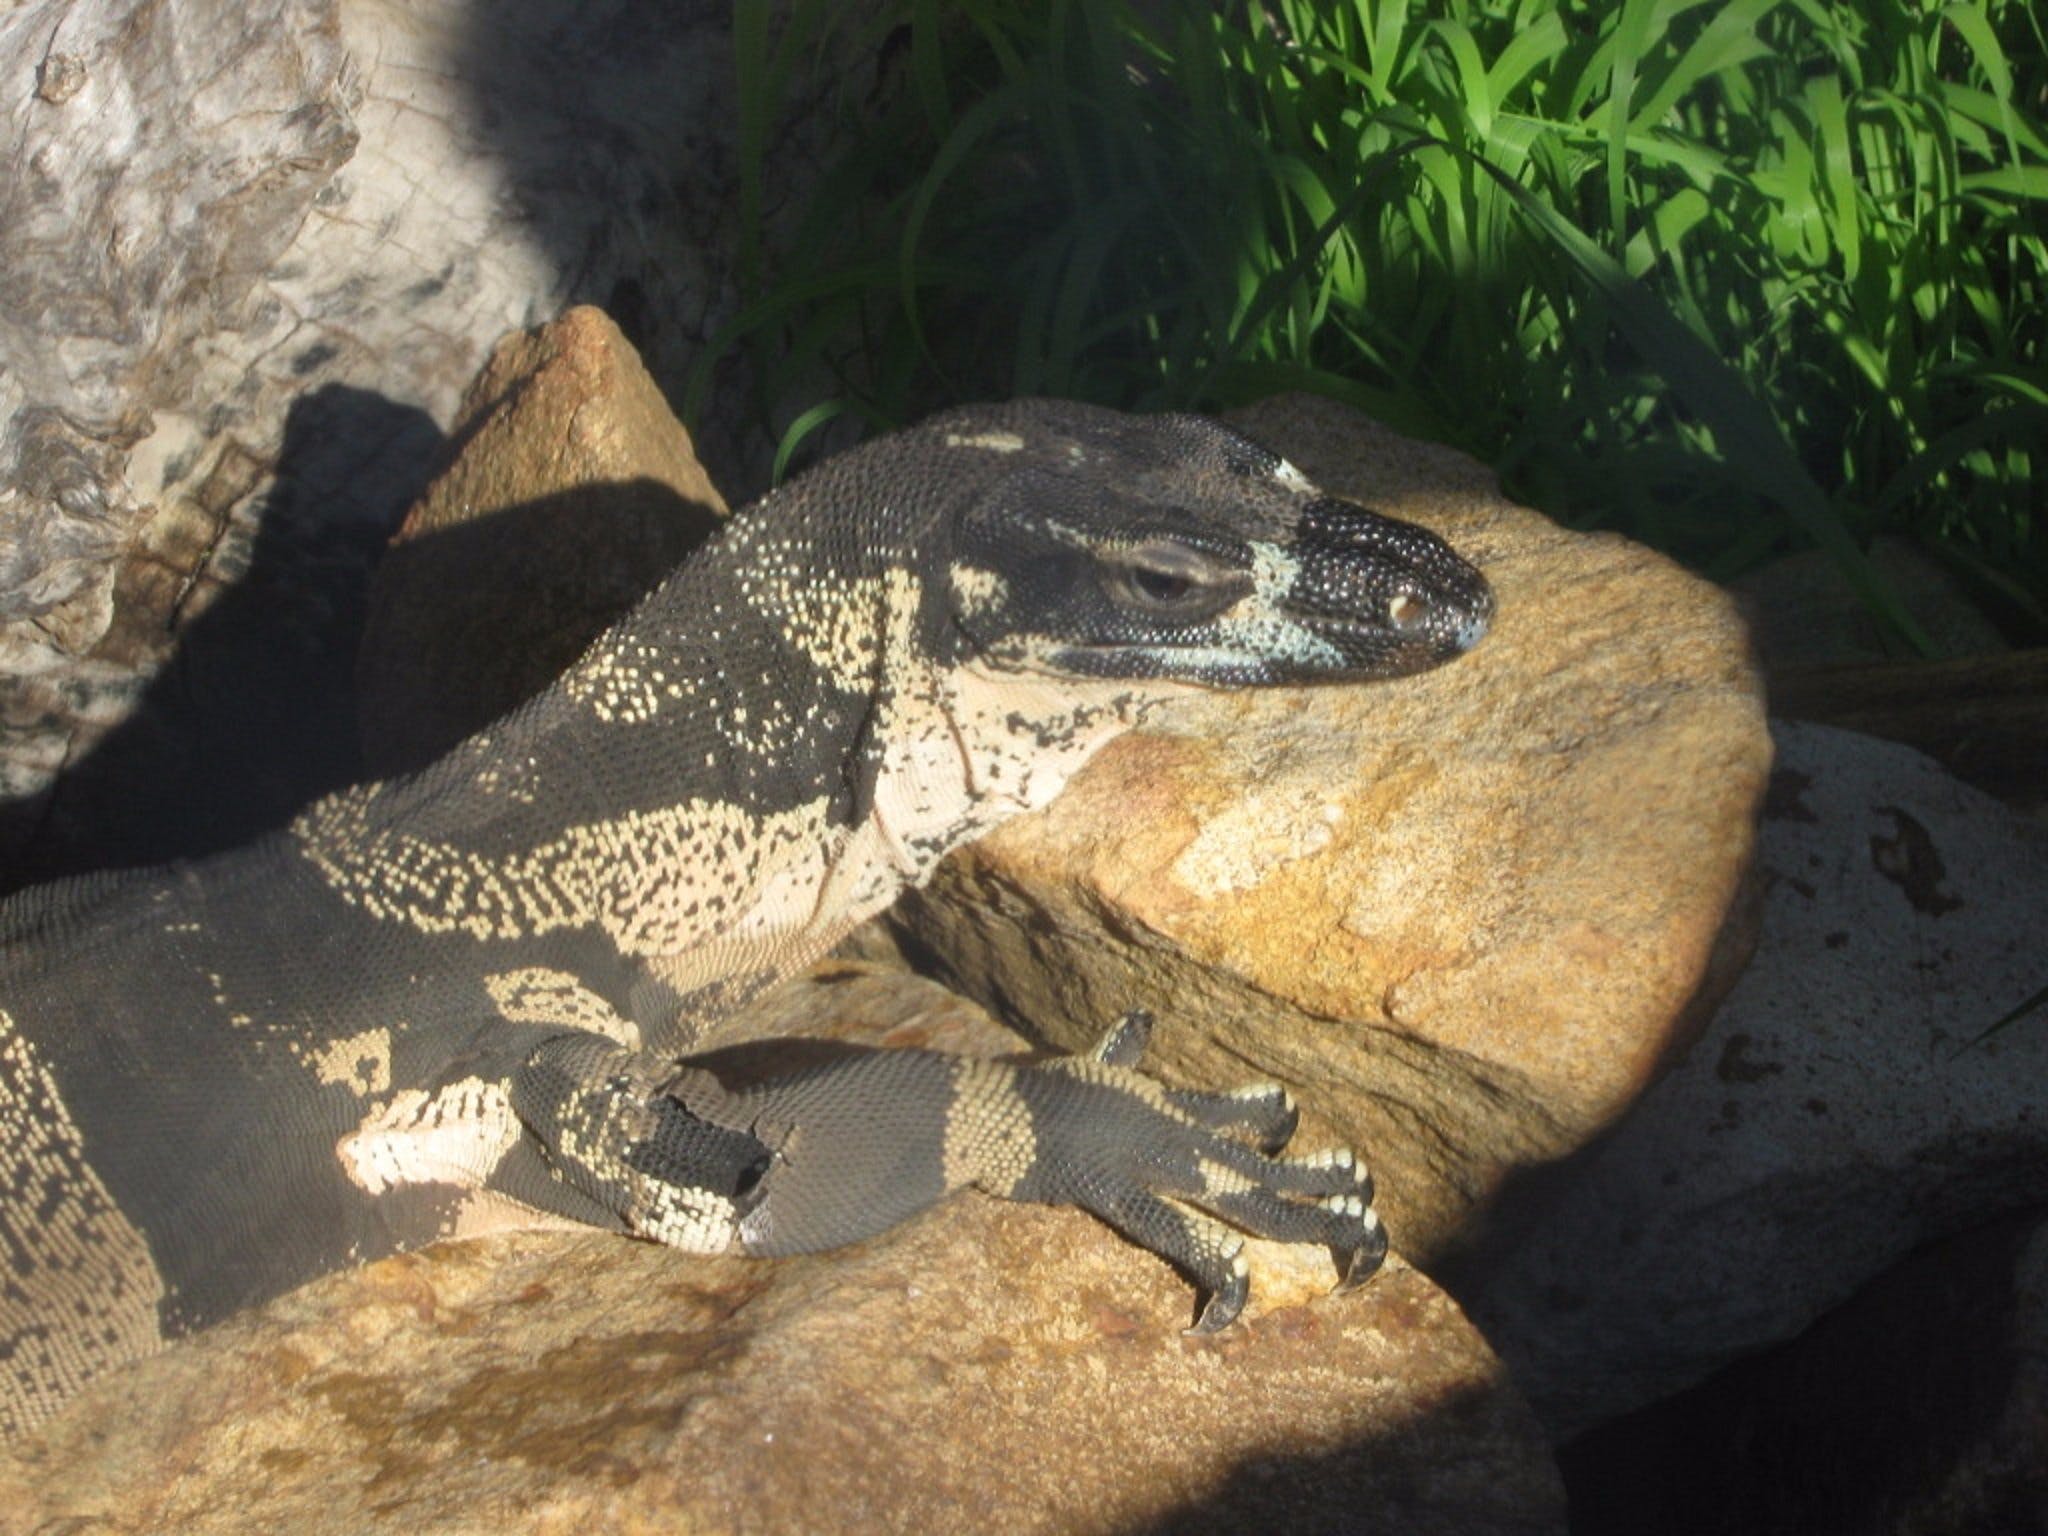 Armadale Reptile Centre - Accommodation Perth